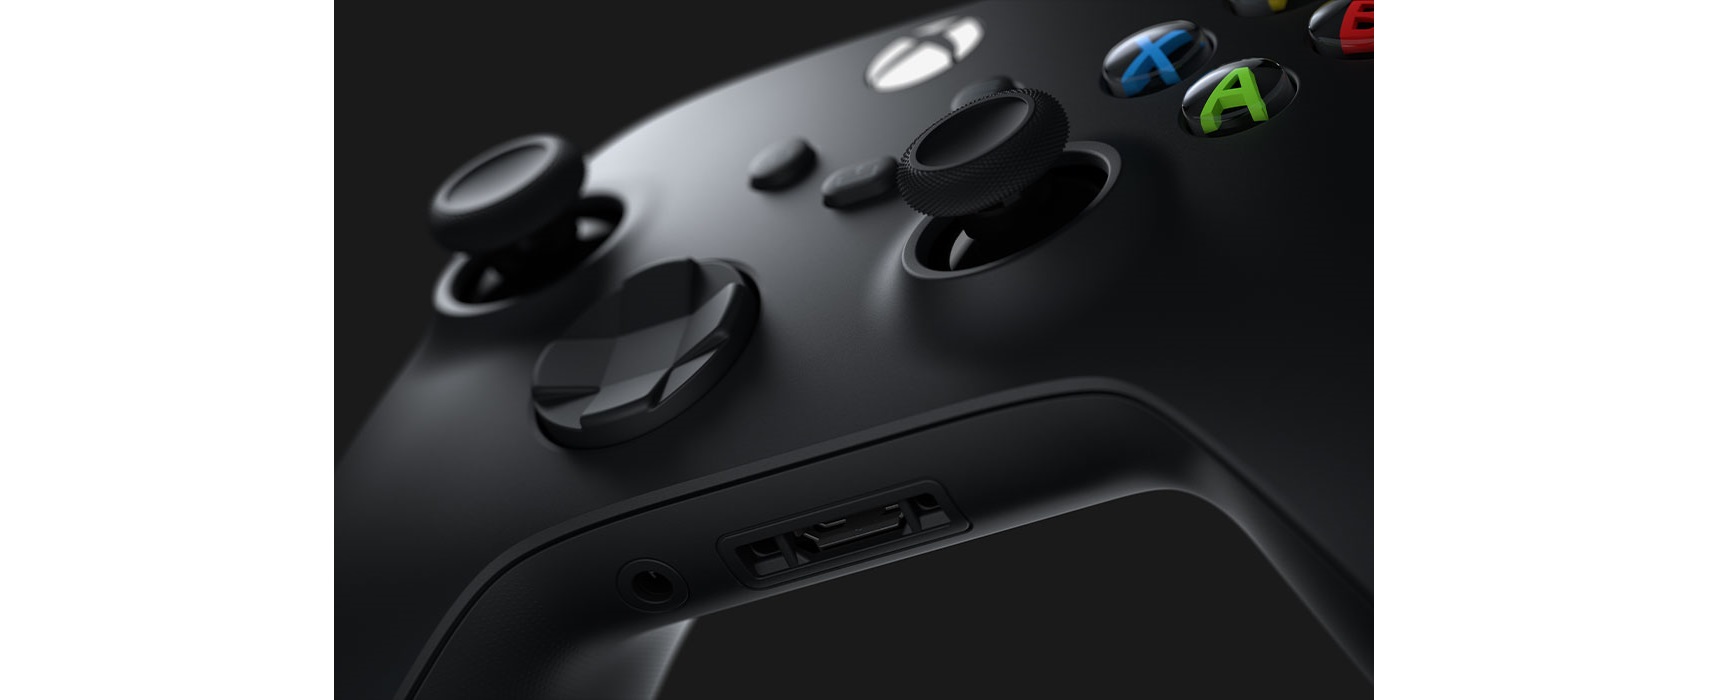 Tay Cầm Chơi Game Xbox Series X Controller - Carbon Black Màu Đen + USB Adapter Không Dây 6